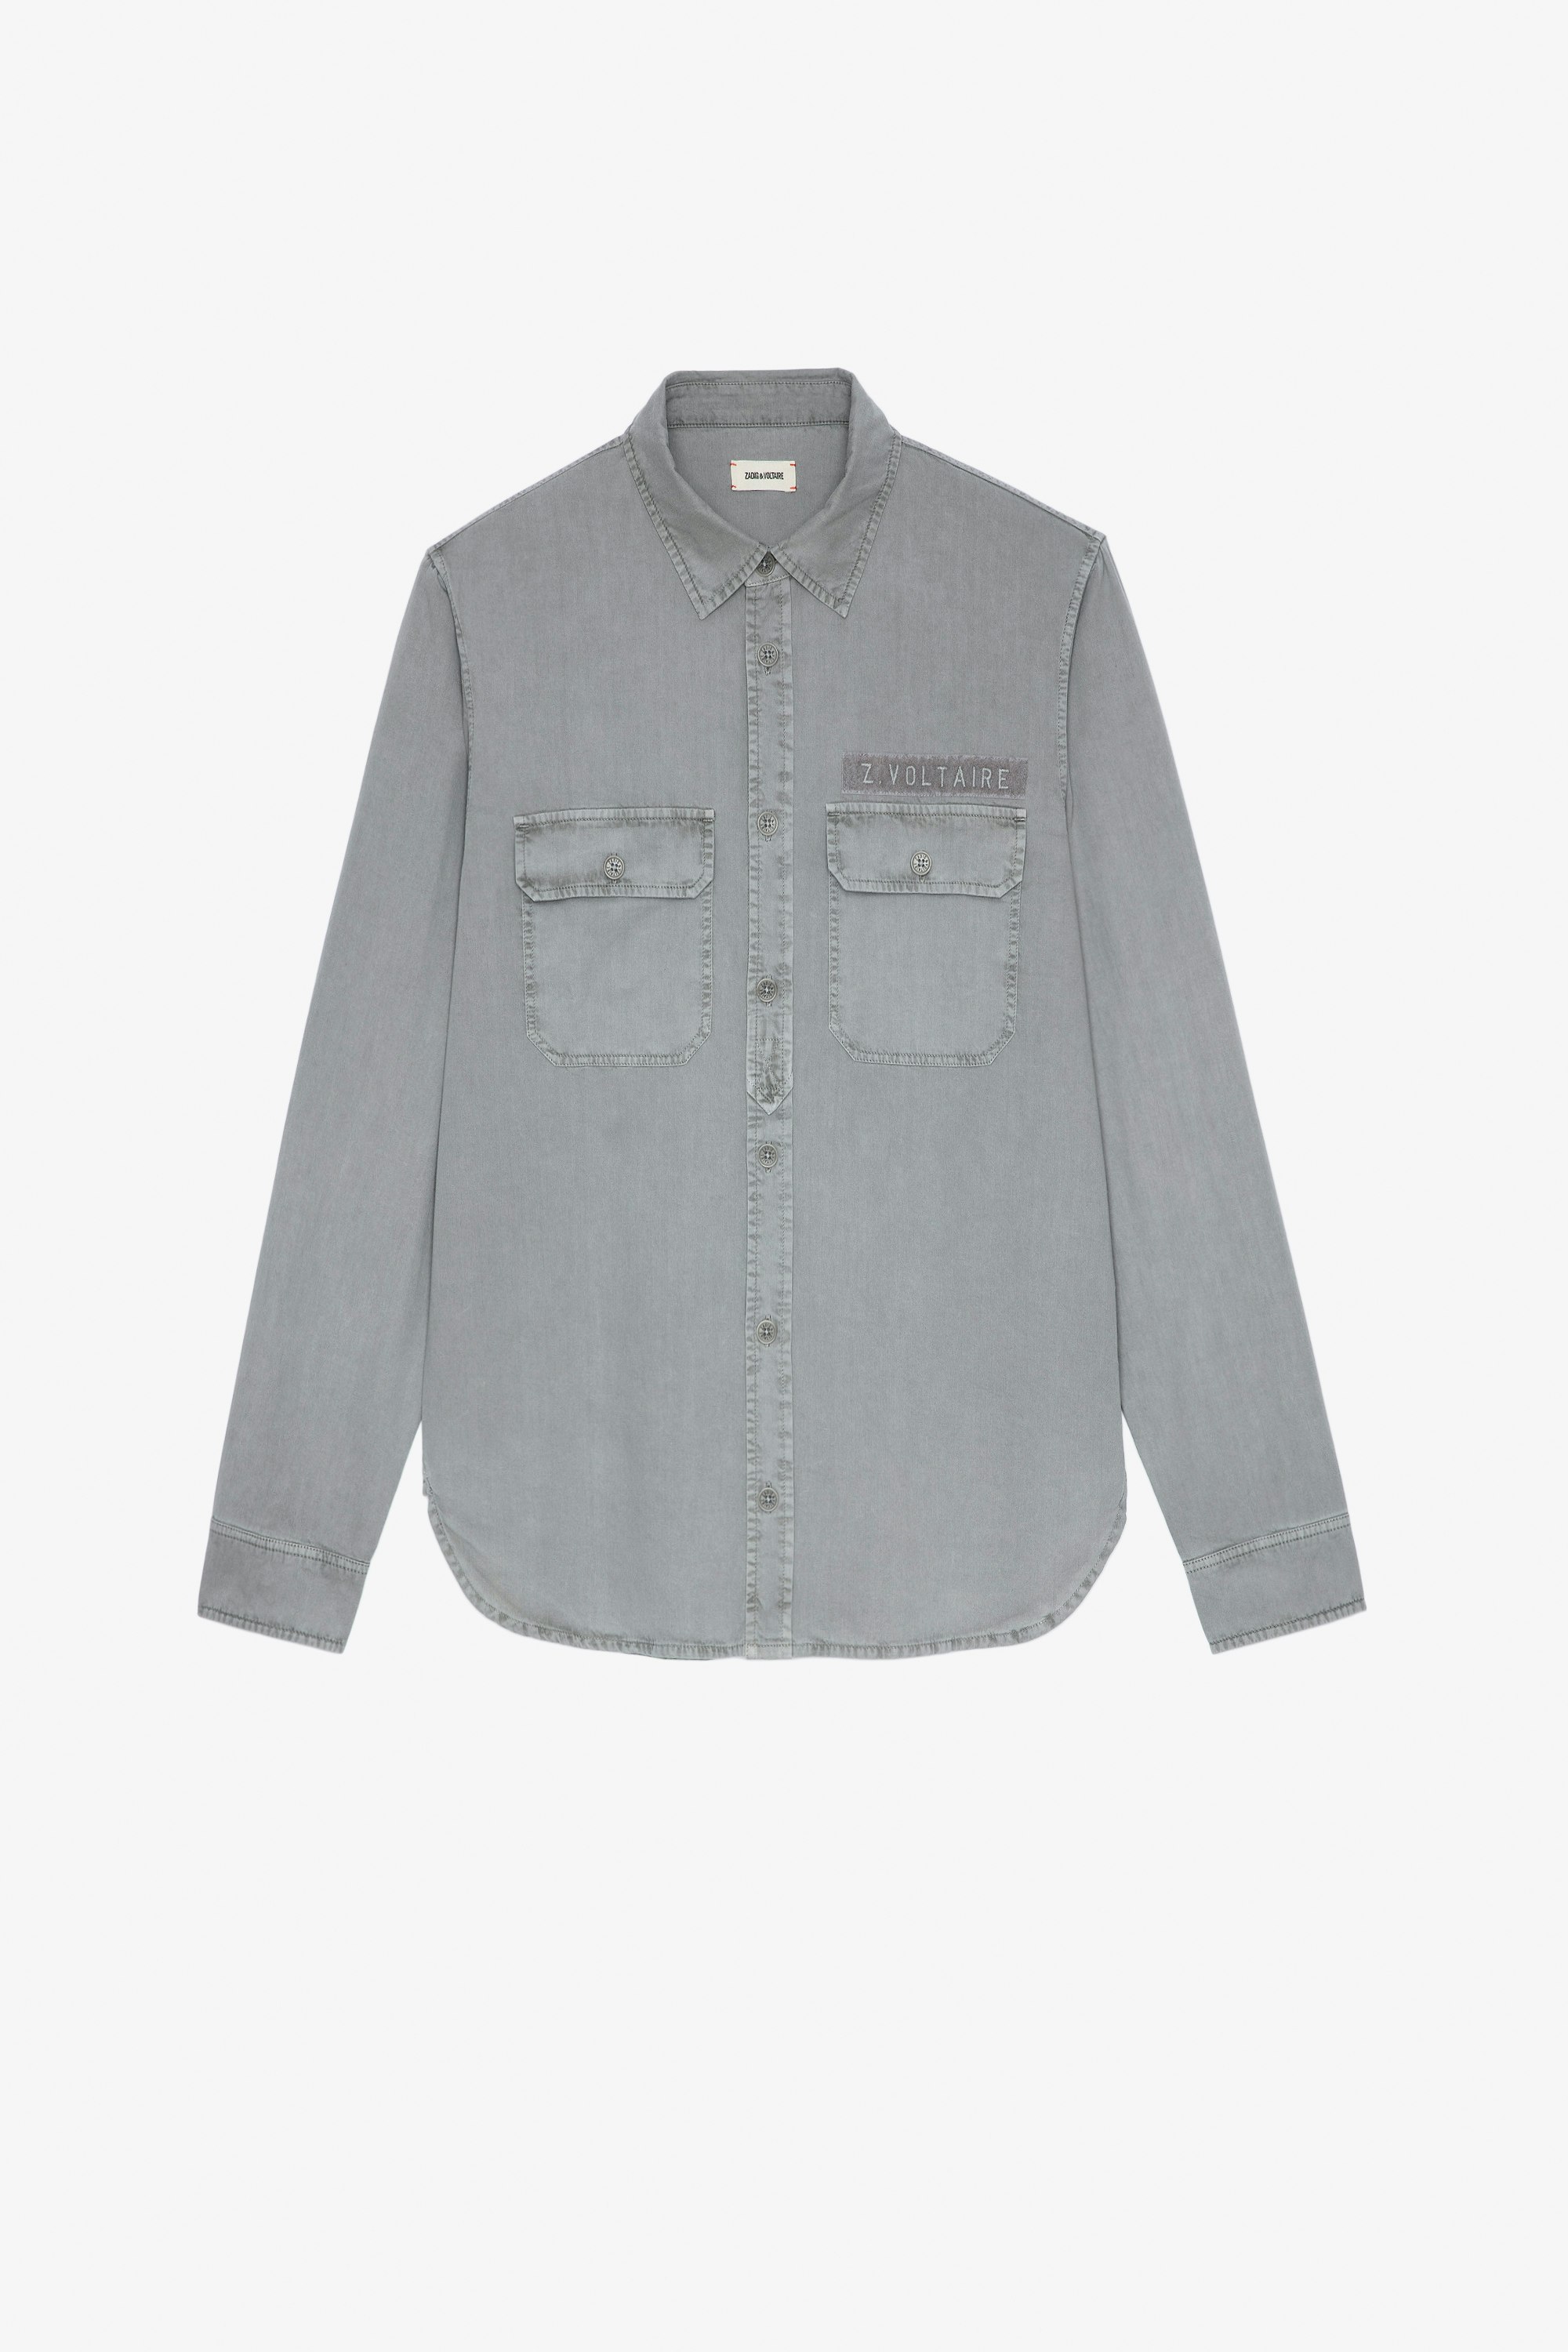 Camisa Serge Tab Camisa militar gris de manga larga de sarga de algodón para hombre